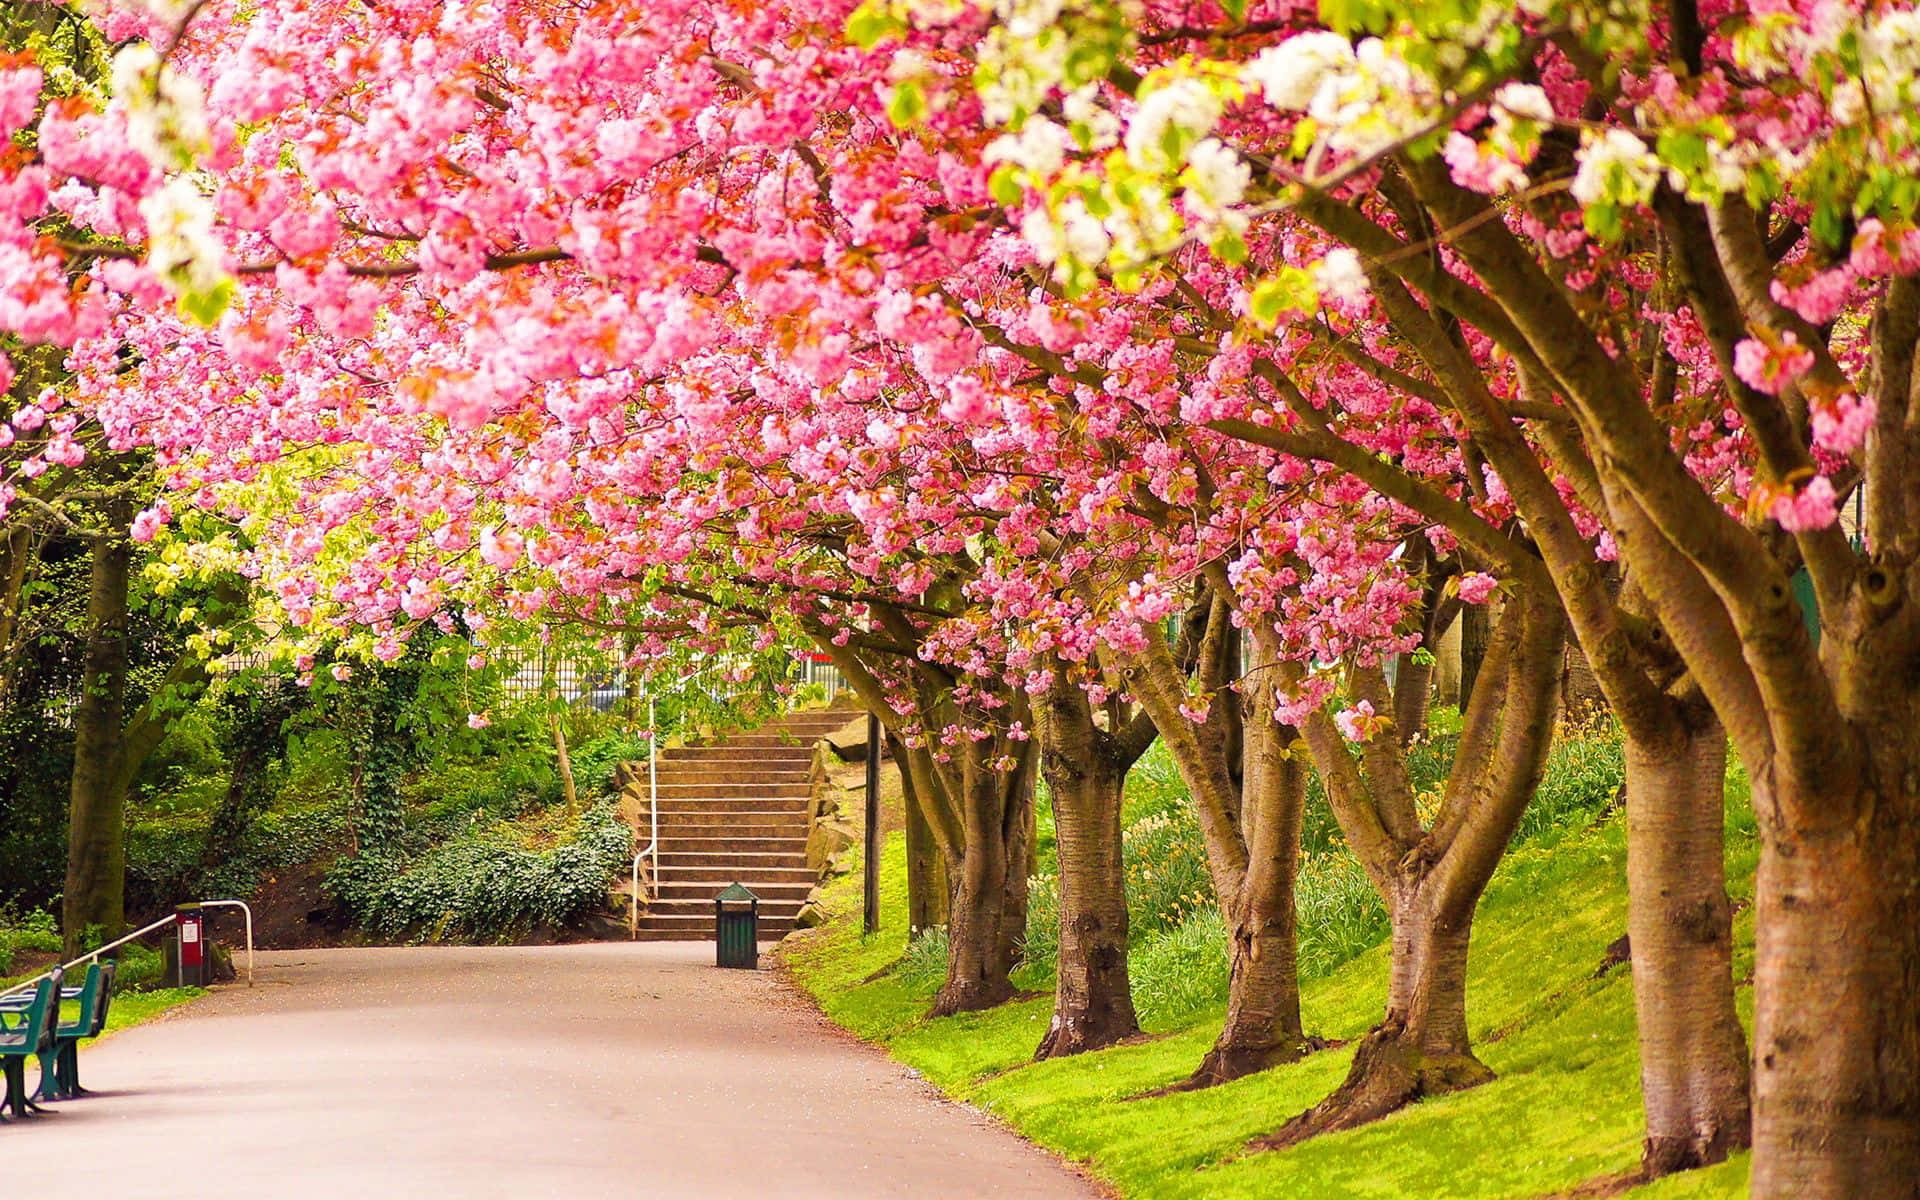 Baggrundmed Kirsebærtræer I Blomst Om Foråret.